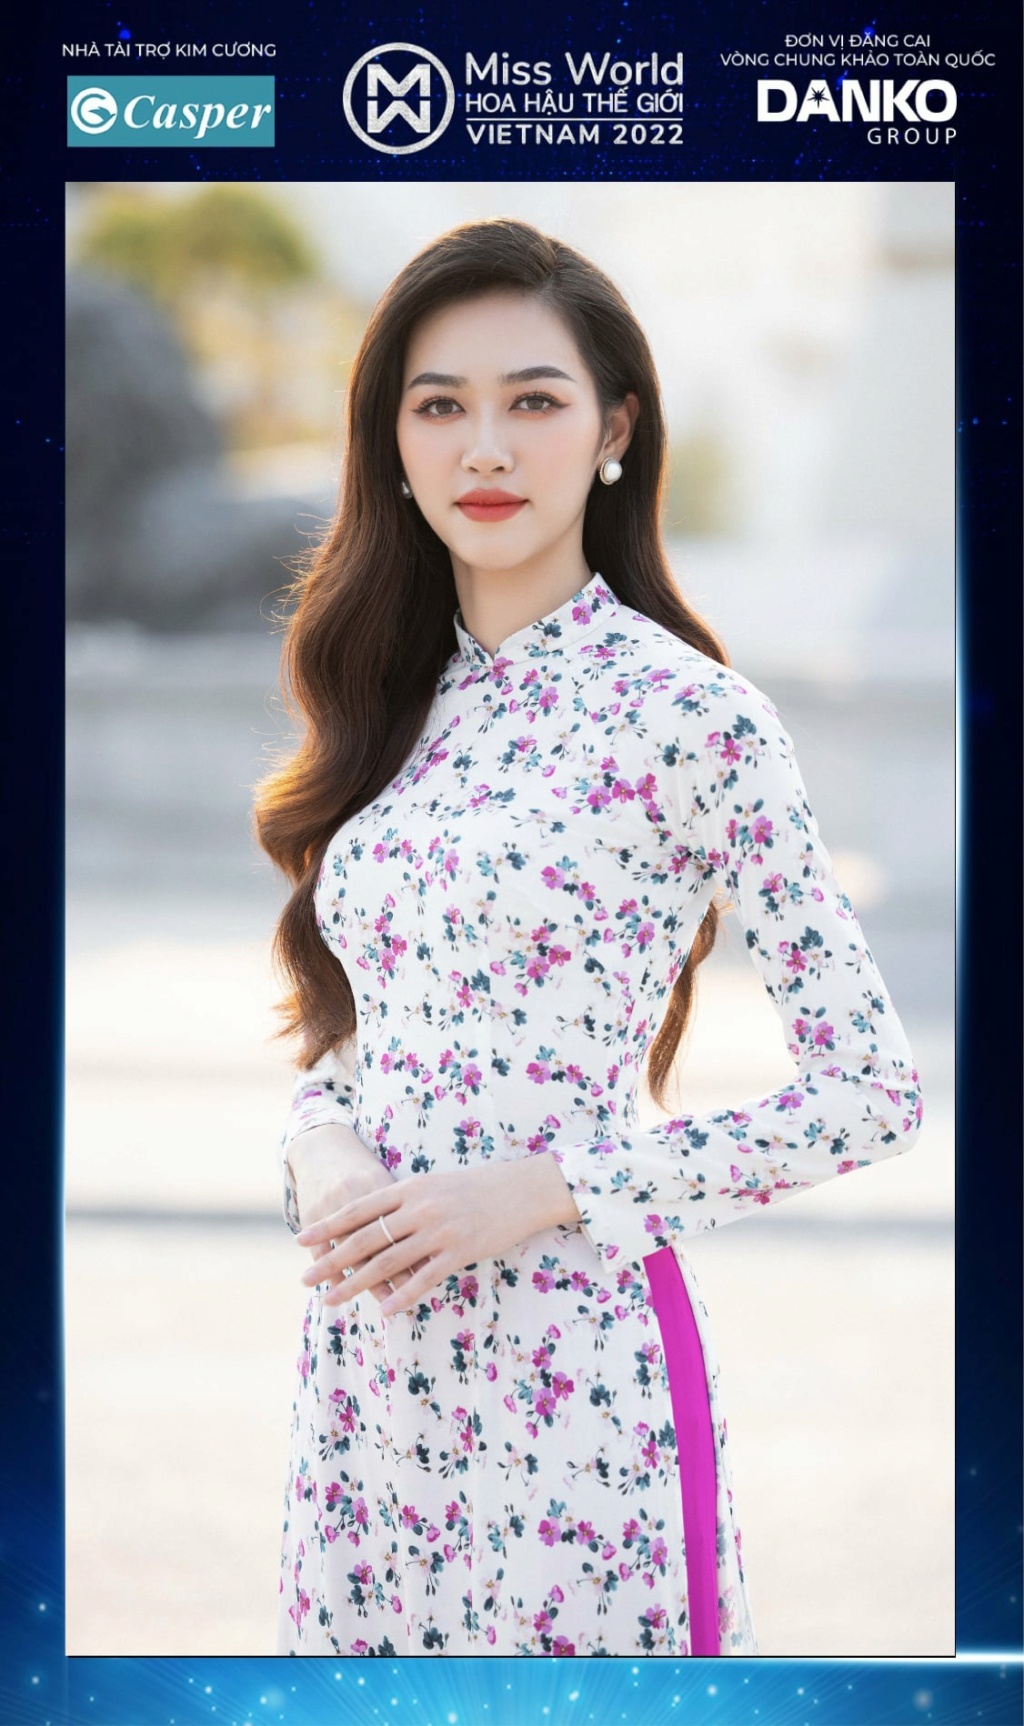 Miss World Vietnam 2022 27915910